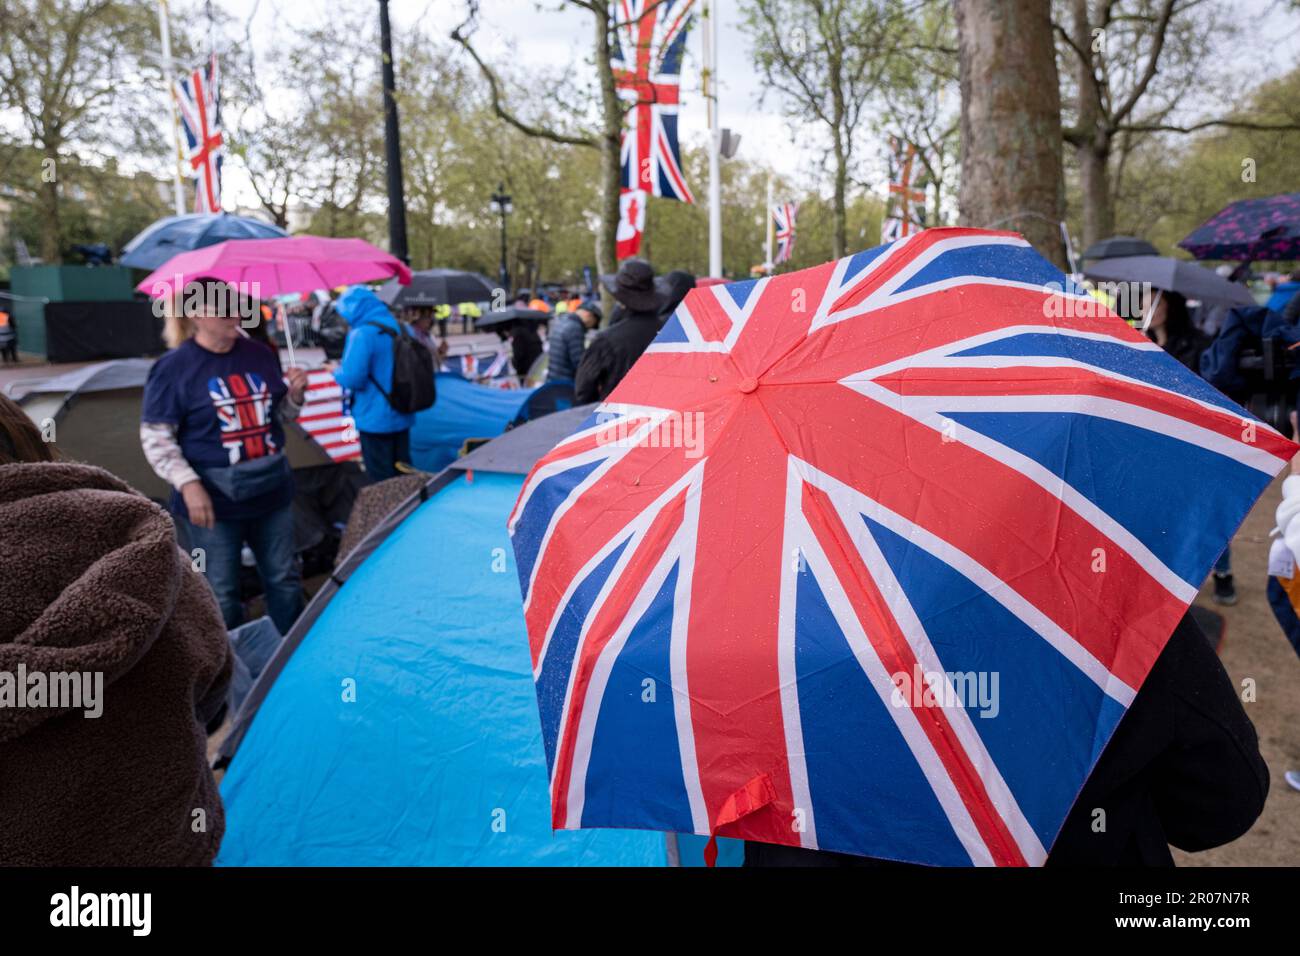 Menschen, Royalisten und königliche Fans verstecken sich unter Regenschirmen, während sintflutartige Regenfälle eintreffen, während sich die Menschen in der Mall versammeln, um sich auf die Krönung von König Karl III. Am 5. Mai 2023 in London, Großbritannien, vorzubereiten. Viele sind bereit, über Nacht zu zelten und tragen zur Feier rot-weiß und blau die Flagge der Union, bevor König Karl III. Zum König von England gekrönt wird. Stockfoto